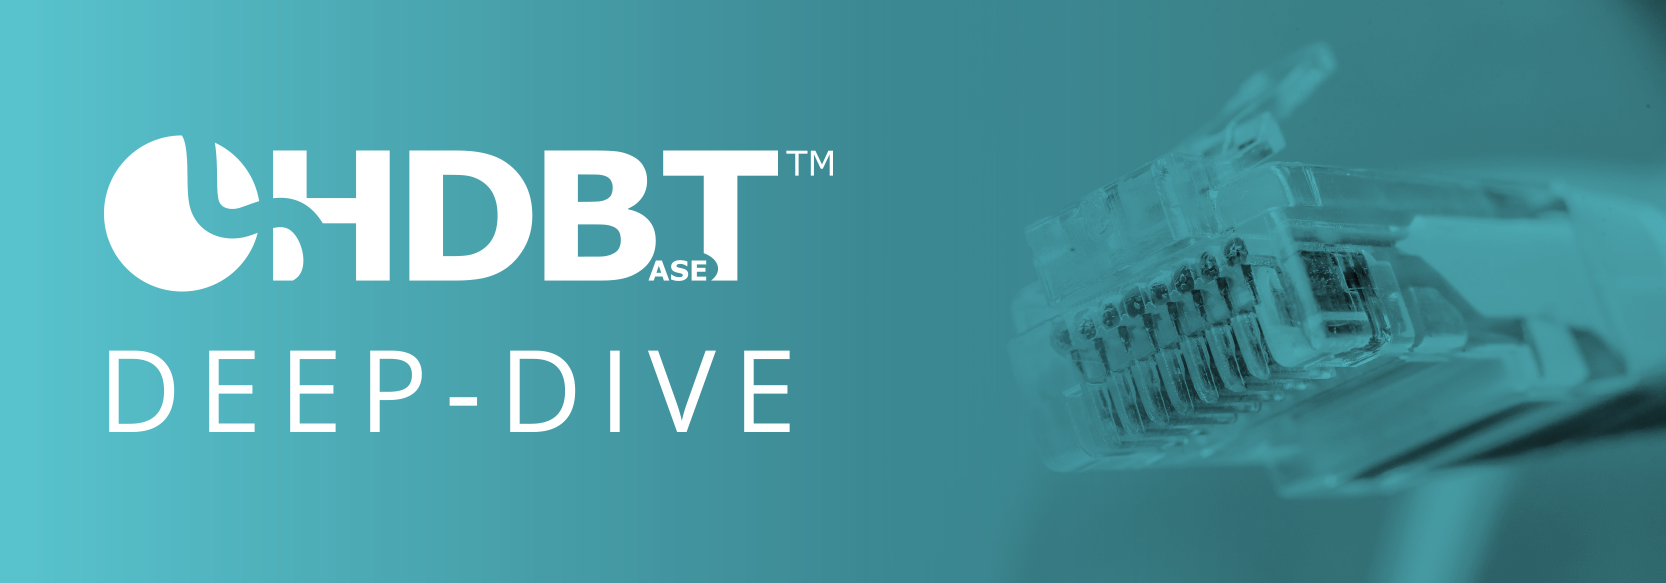 HDBaseT Deep Dive